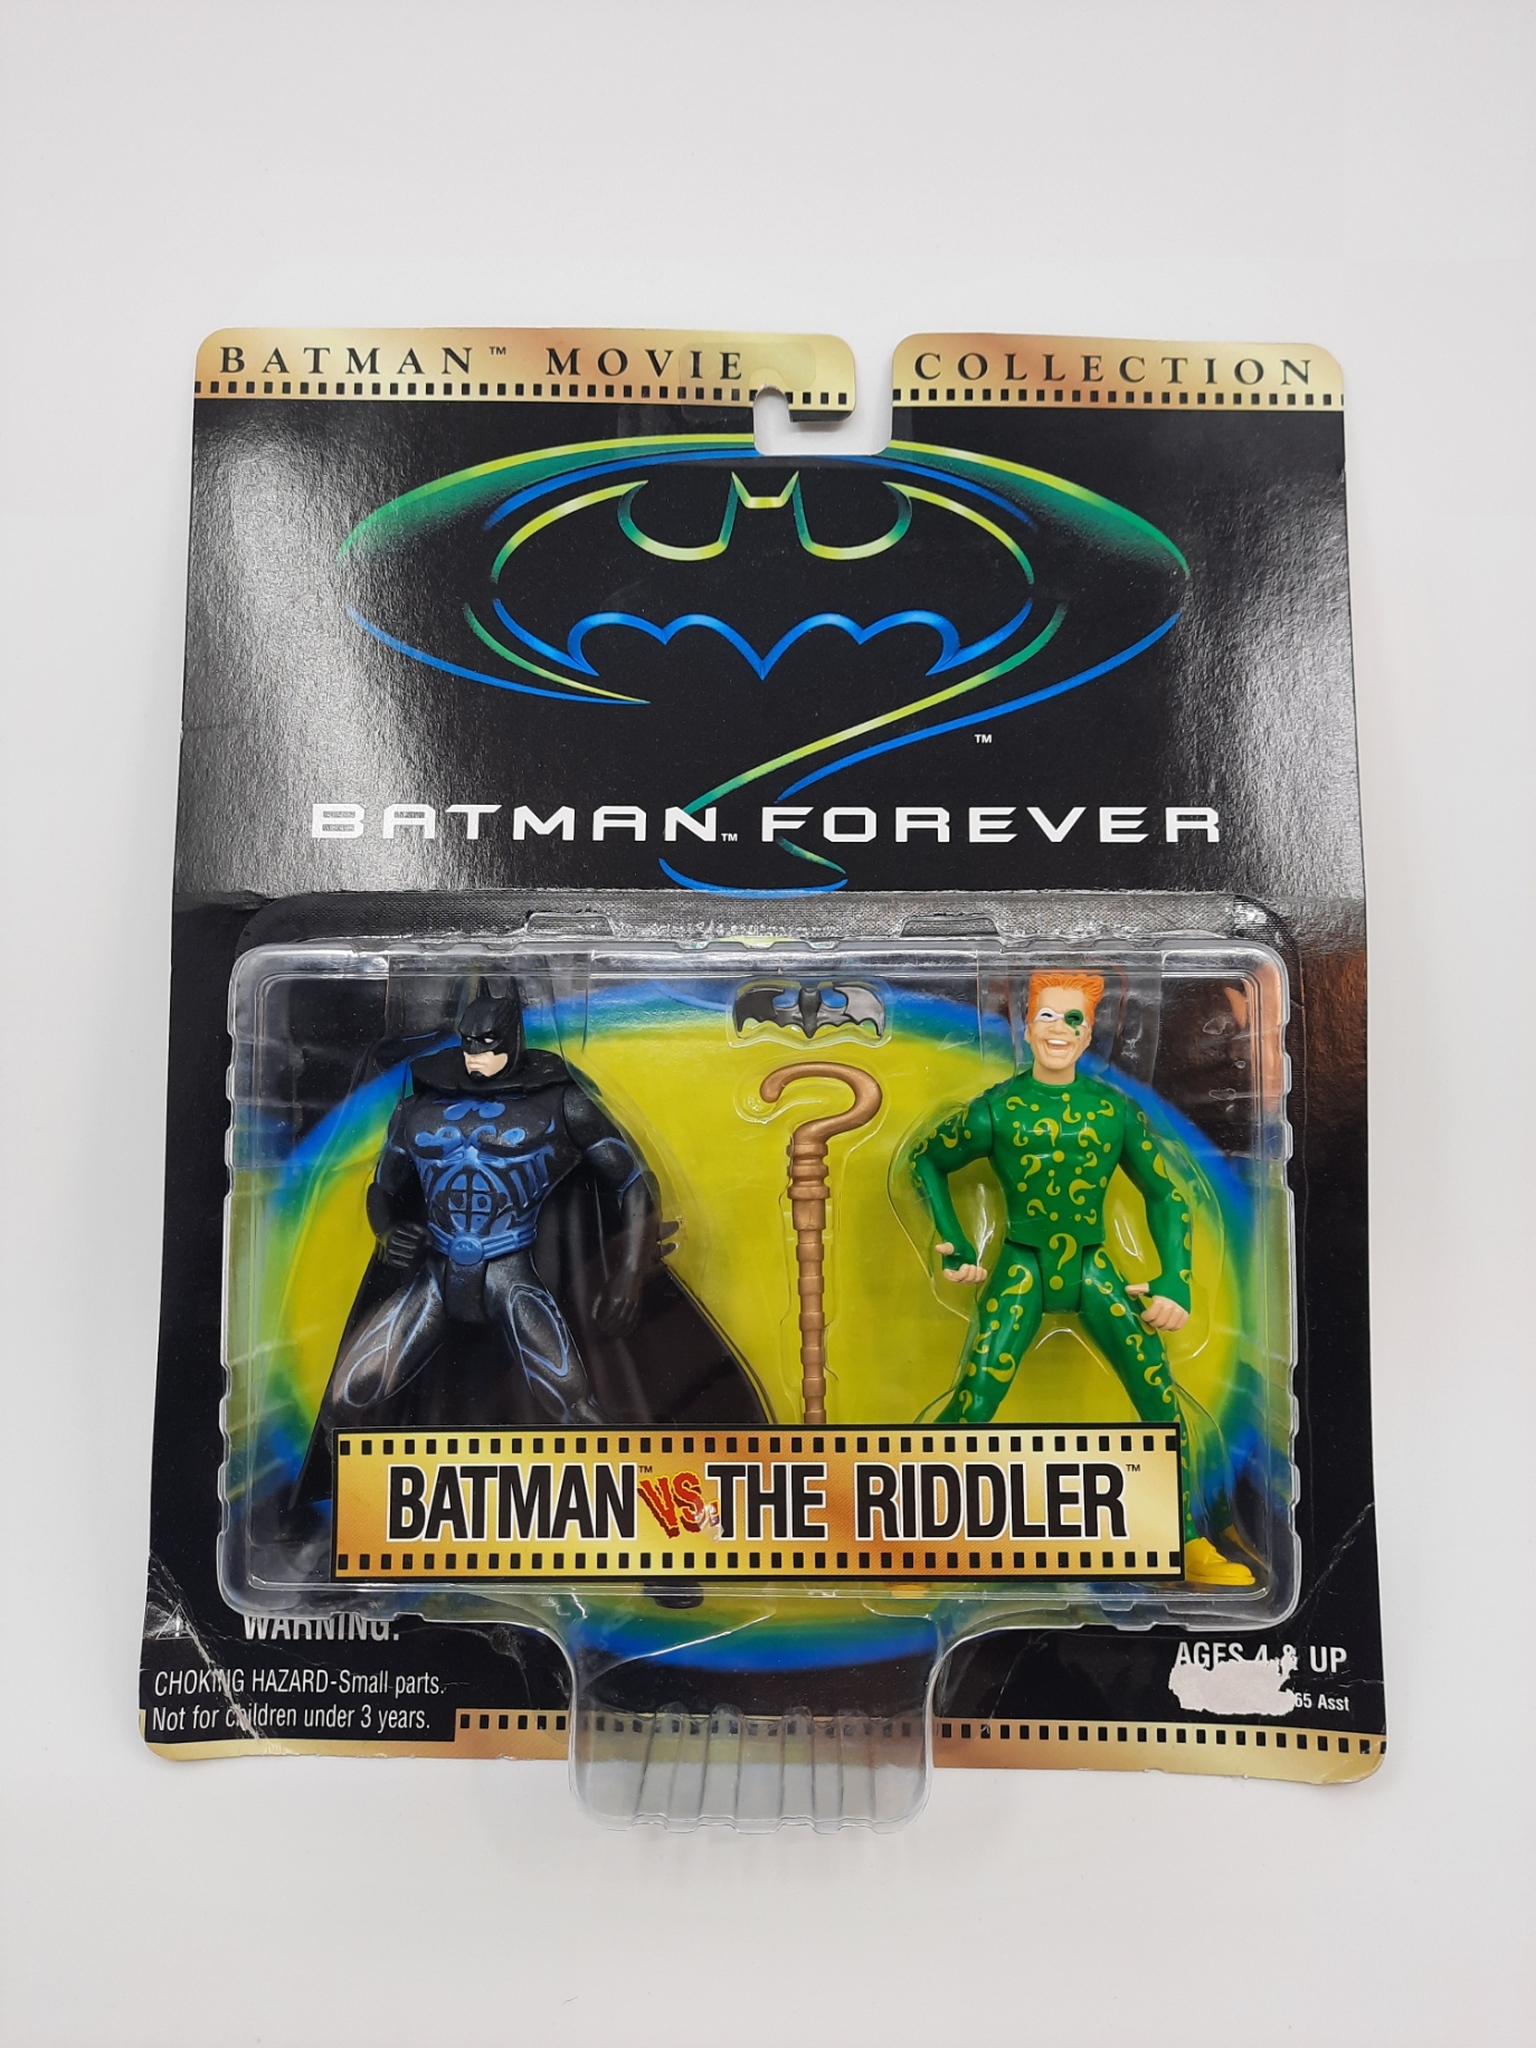 Batman forever: Batman vs The Riddler